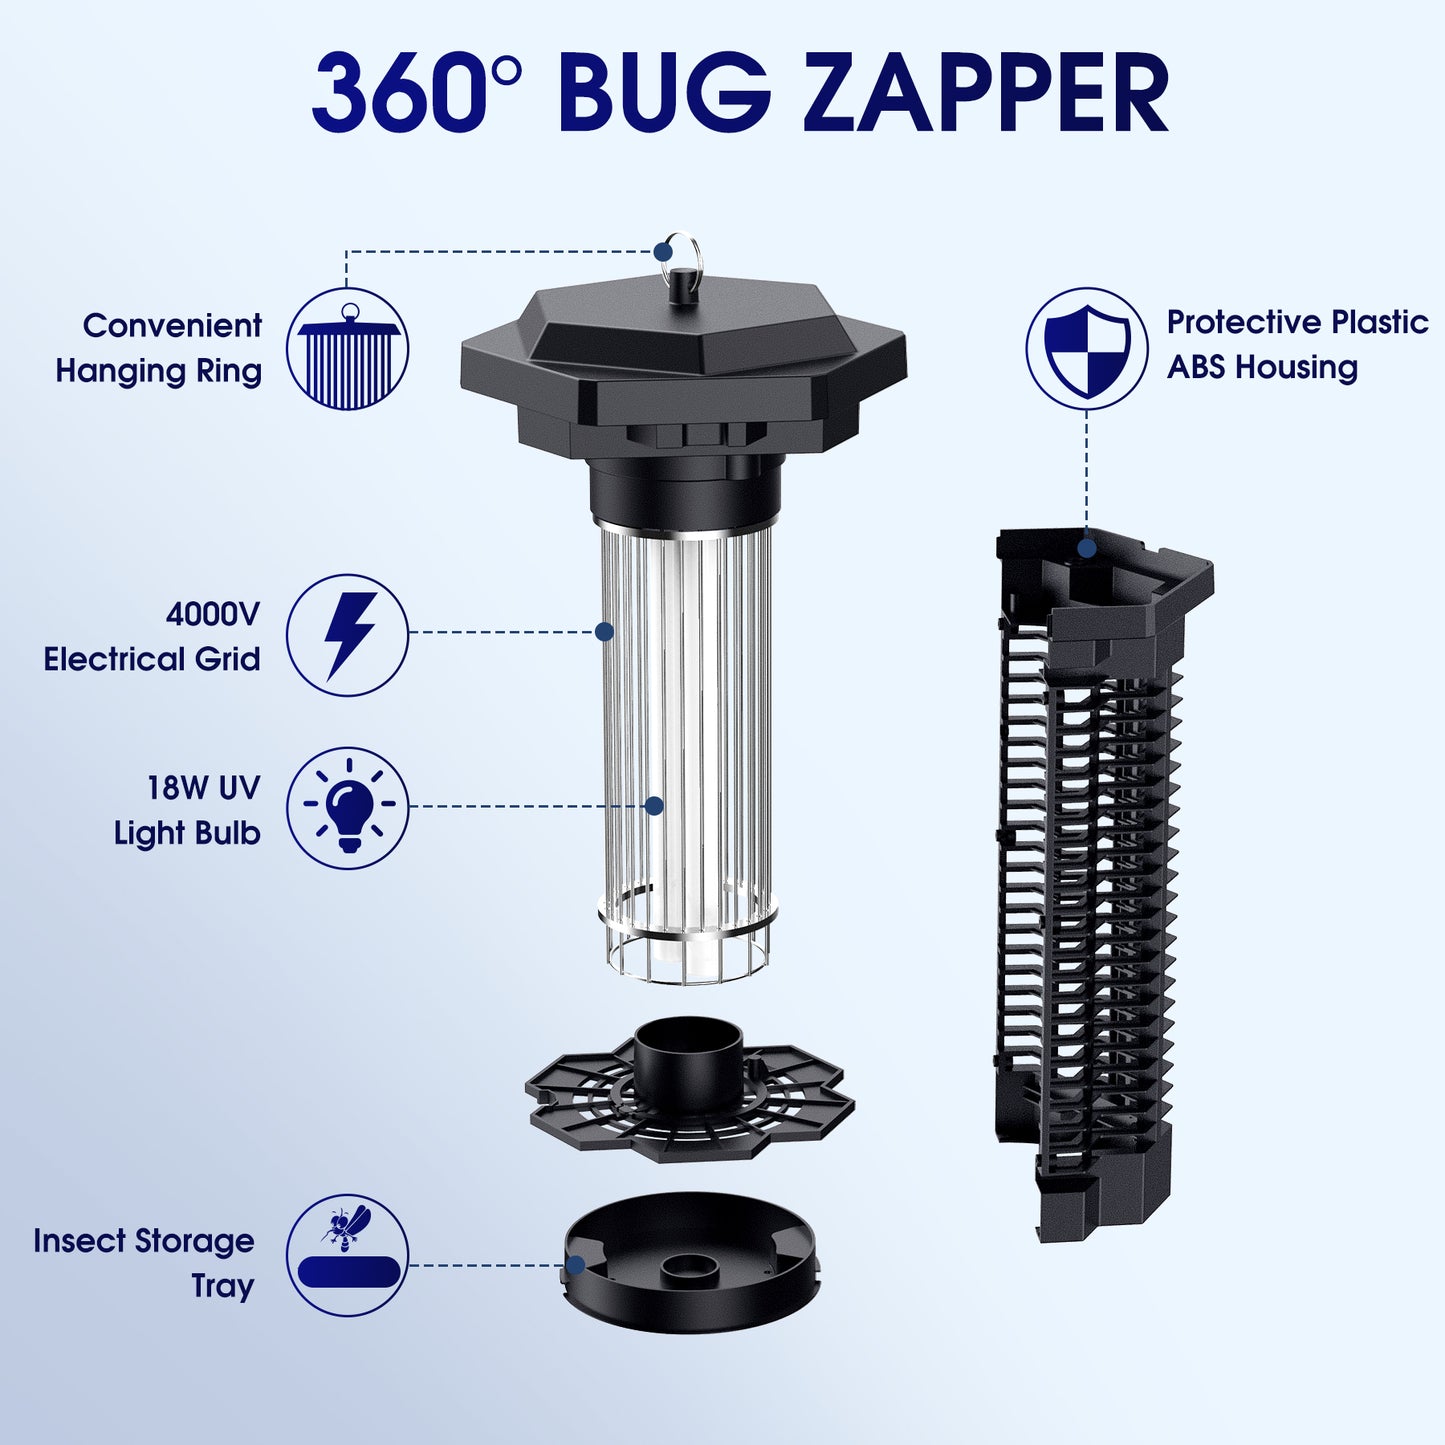 KLOUDIC Bug Zapper 4000 Volt Waterproof Electric Mosquito Killer Trap mosquito repellent outdoor for Home Backyard Patio Garden, Black